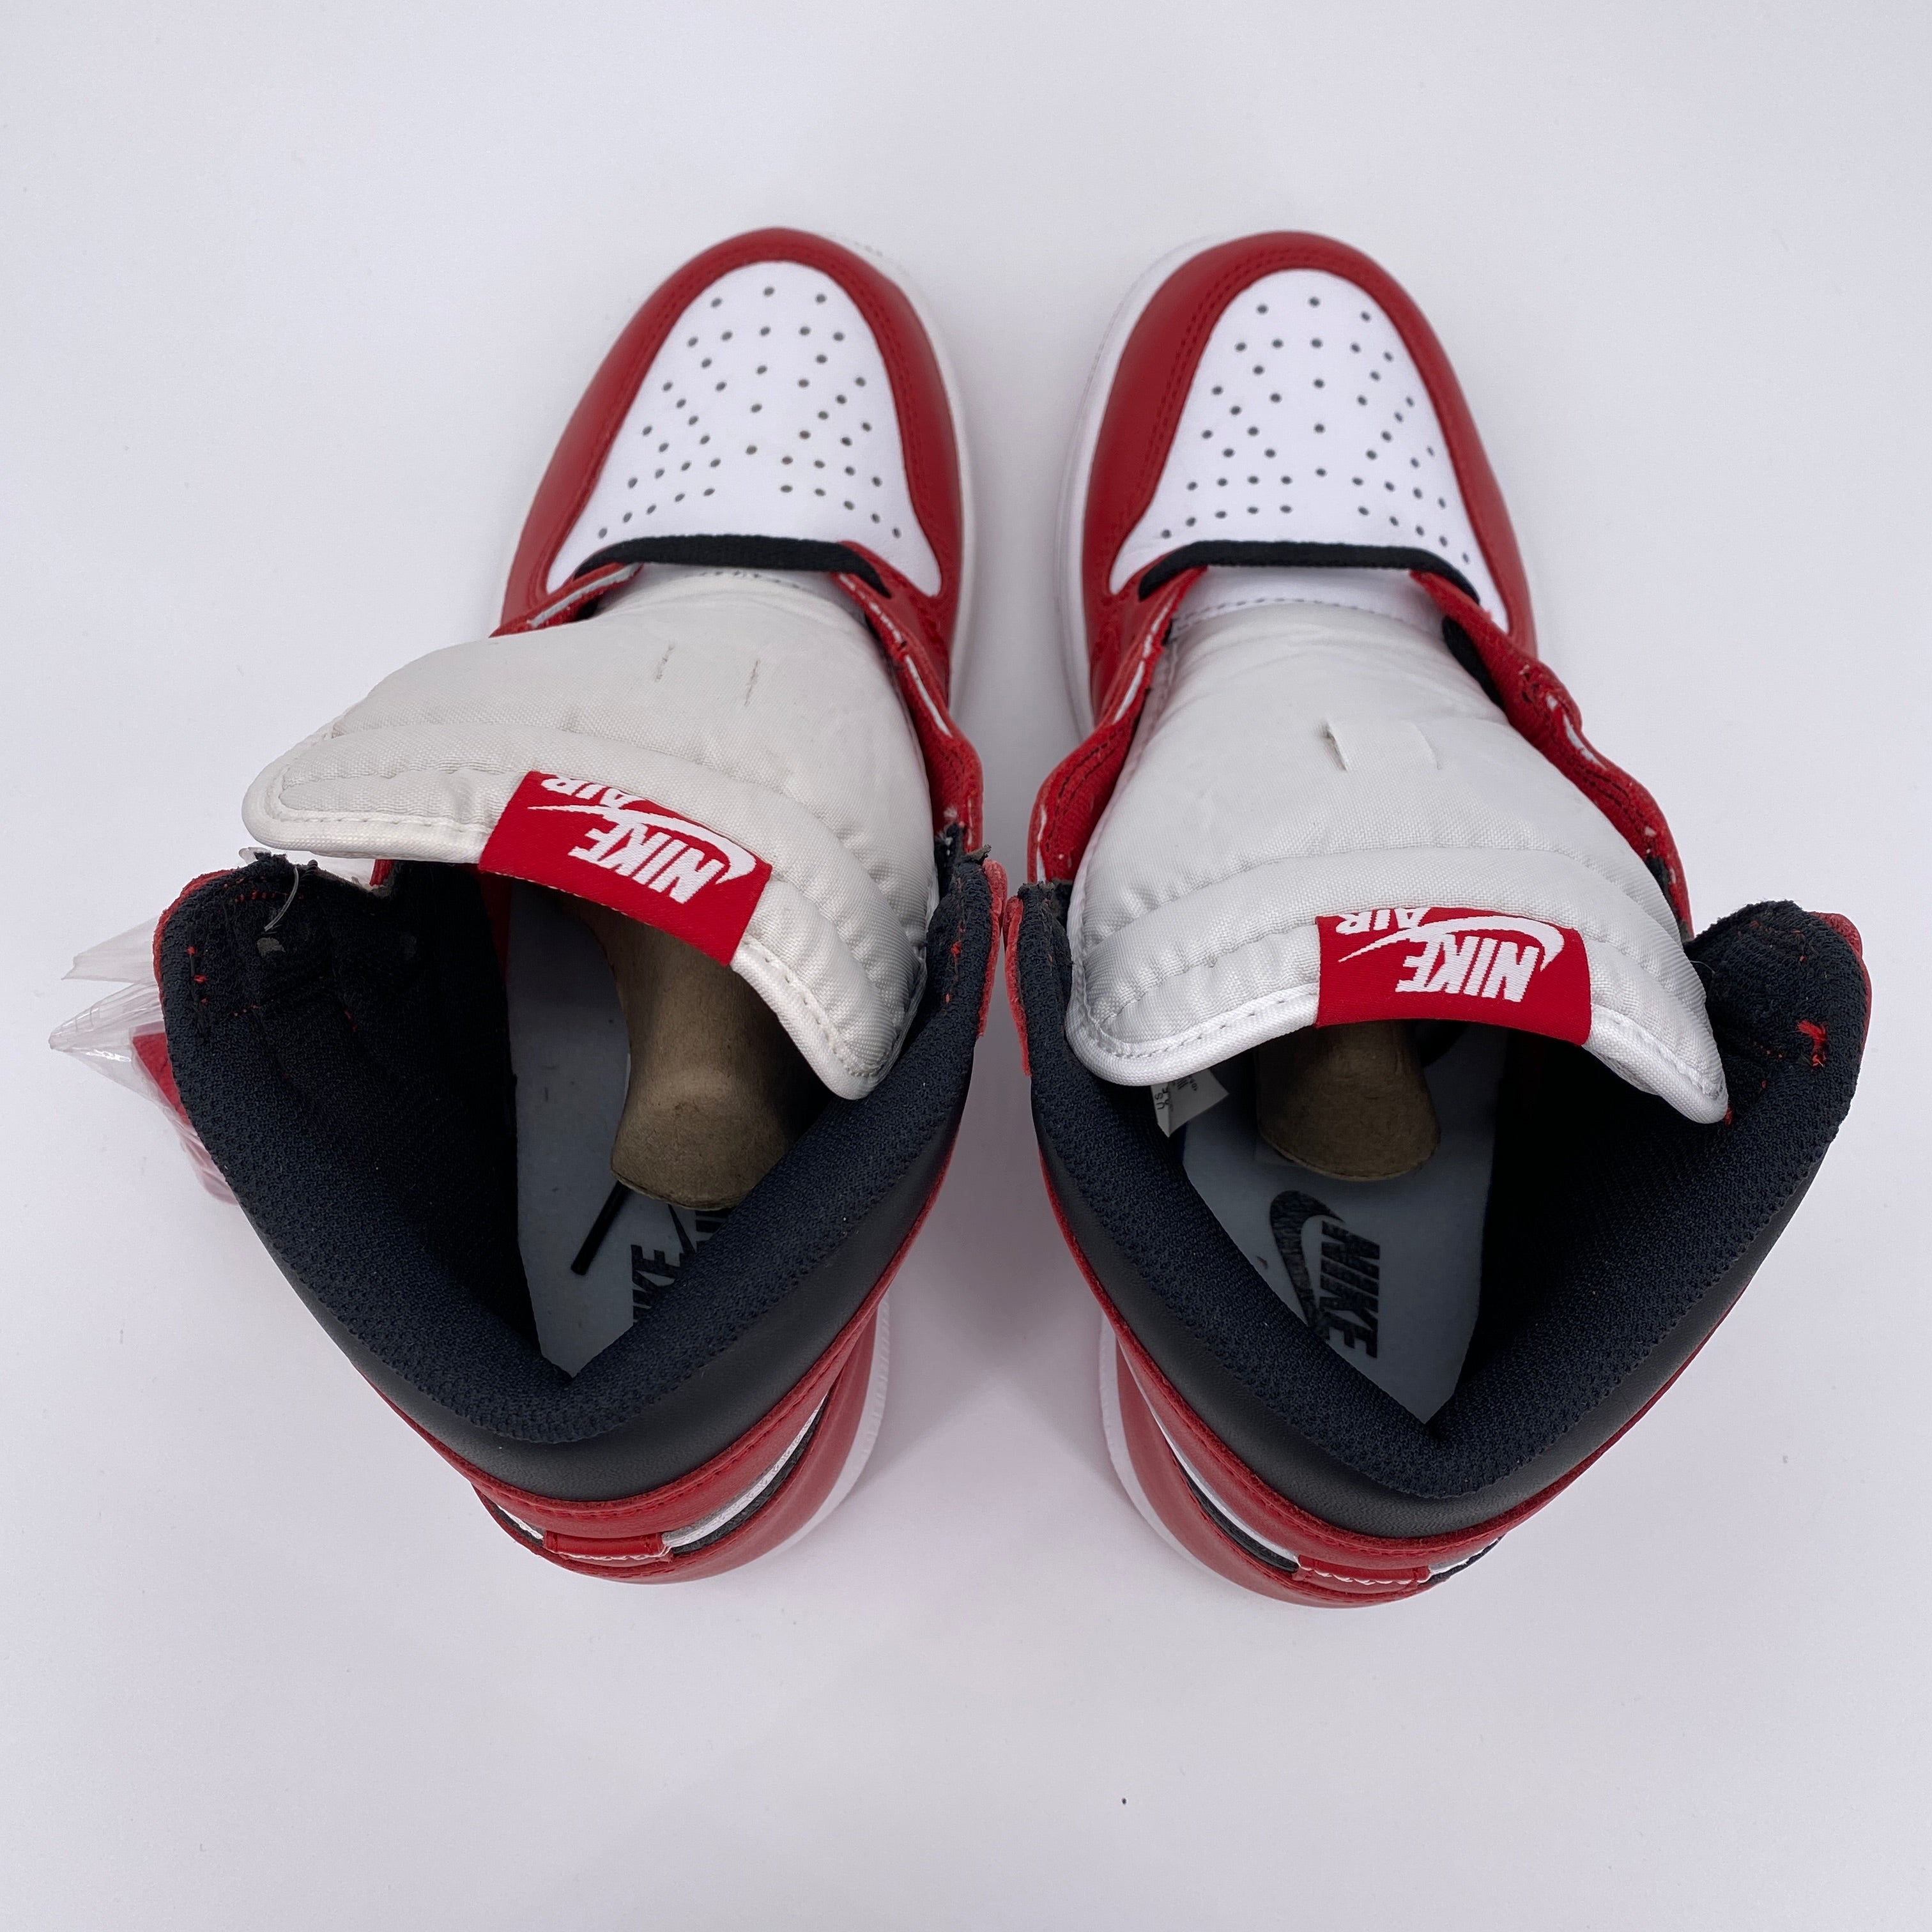 Air Jordan 1 Retro High OG "Chicago" 2015 New Size 8.5